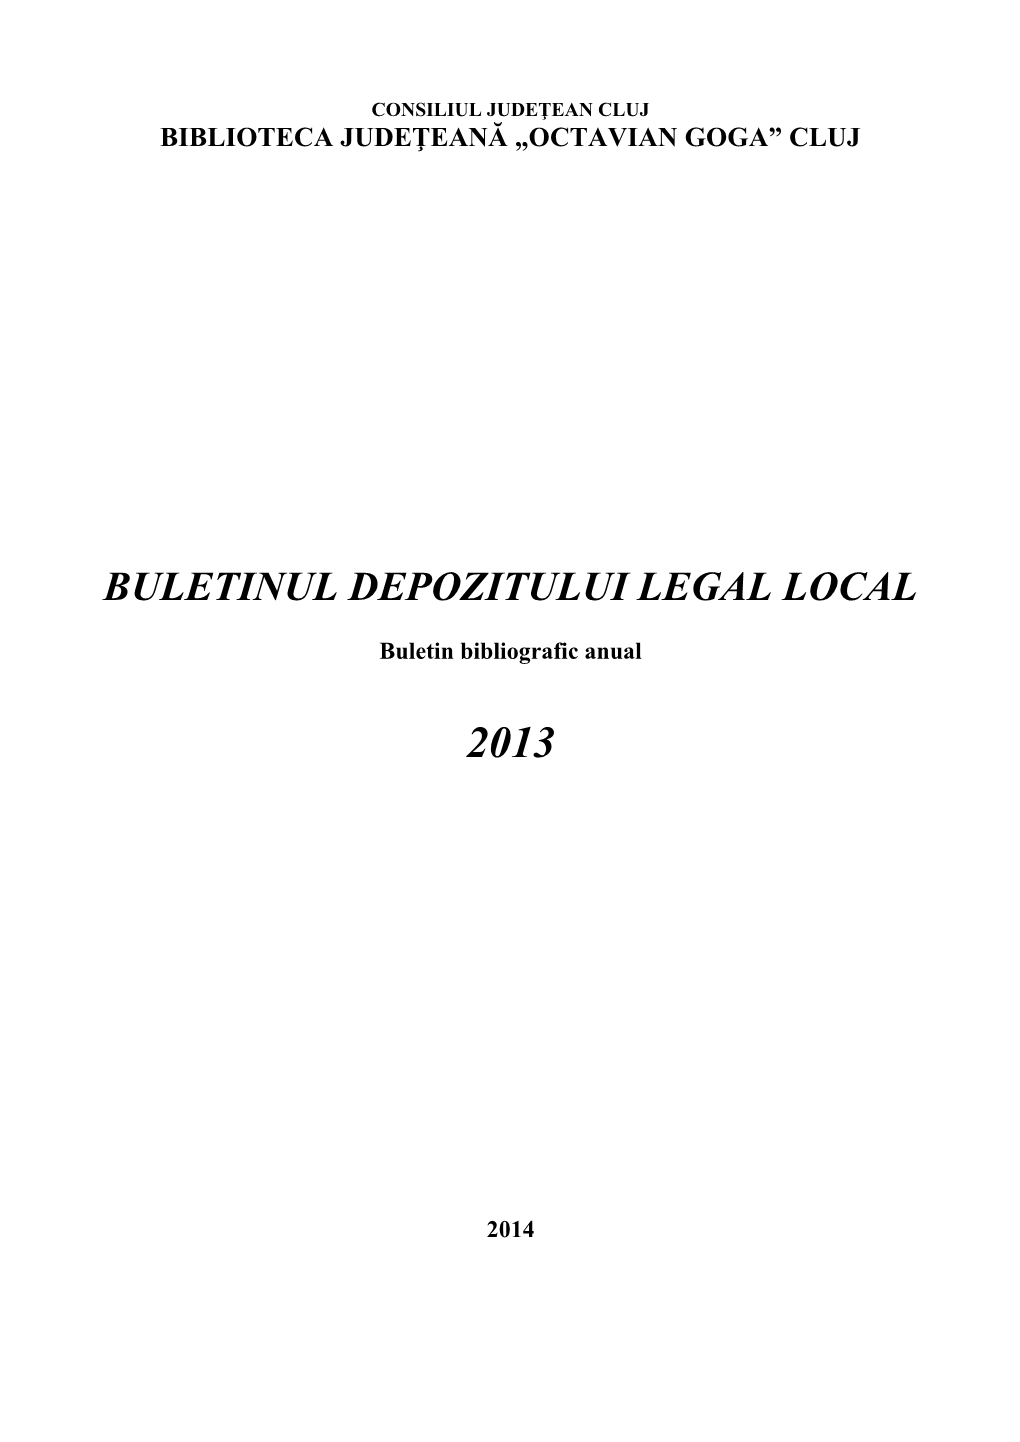 Buletinul Depozitului Legal Local